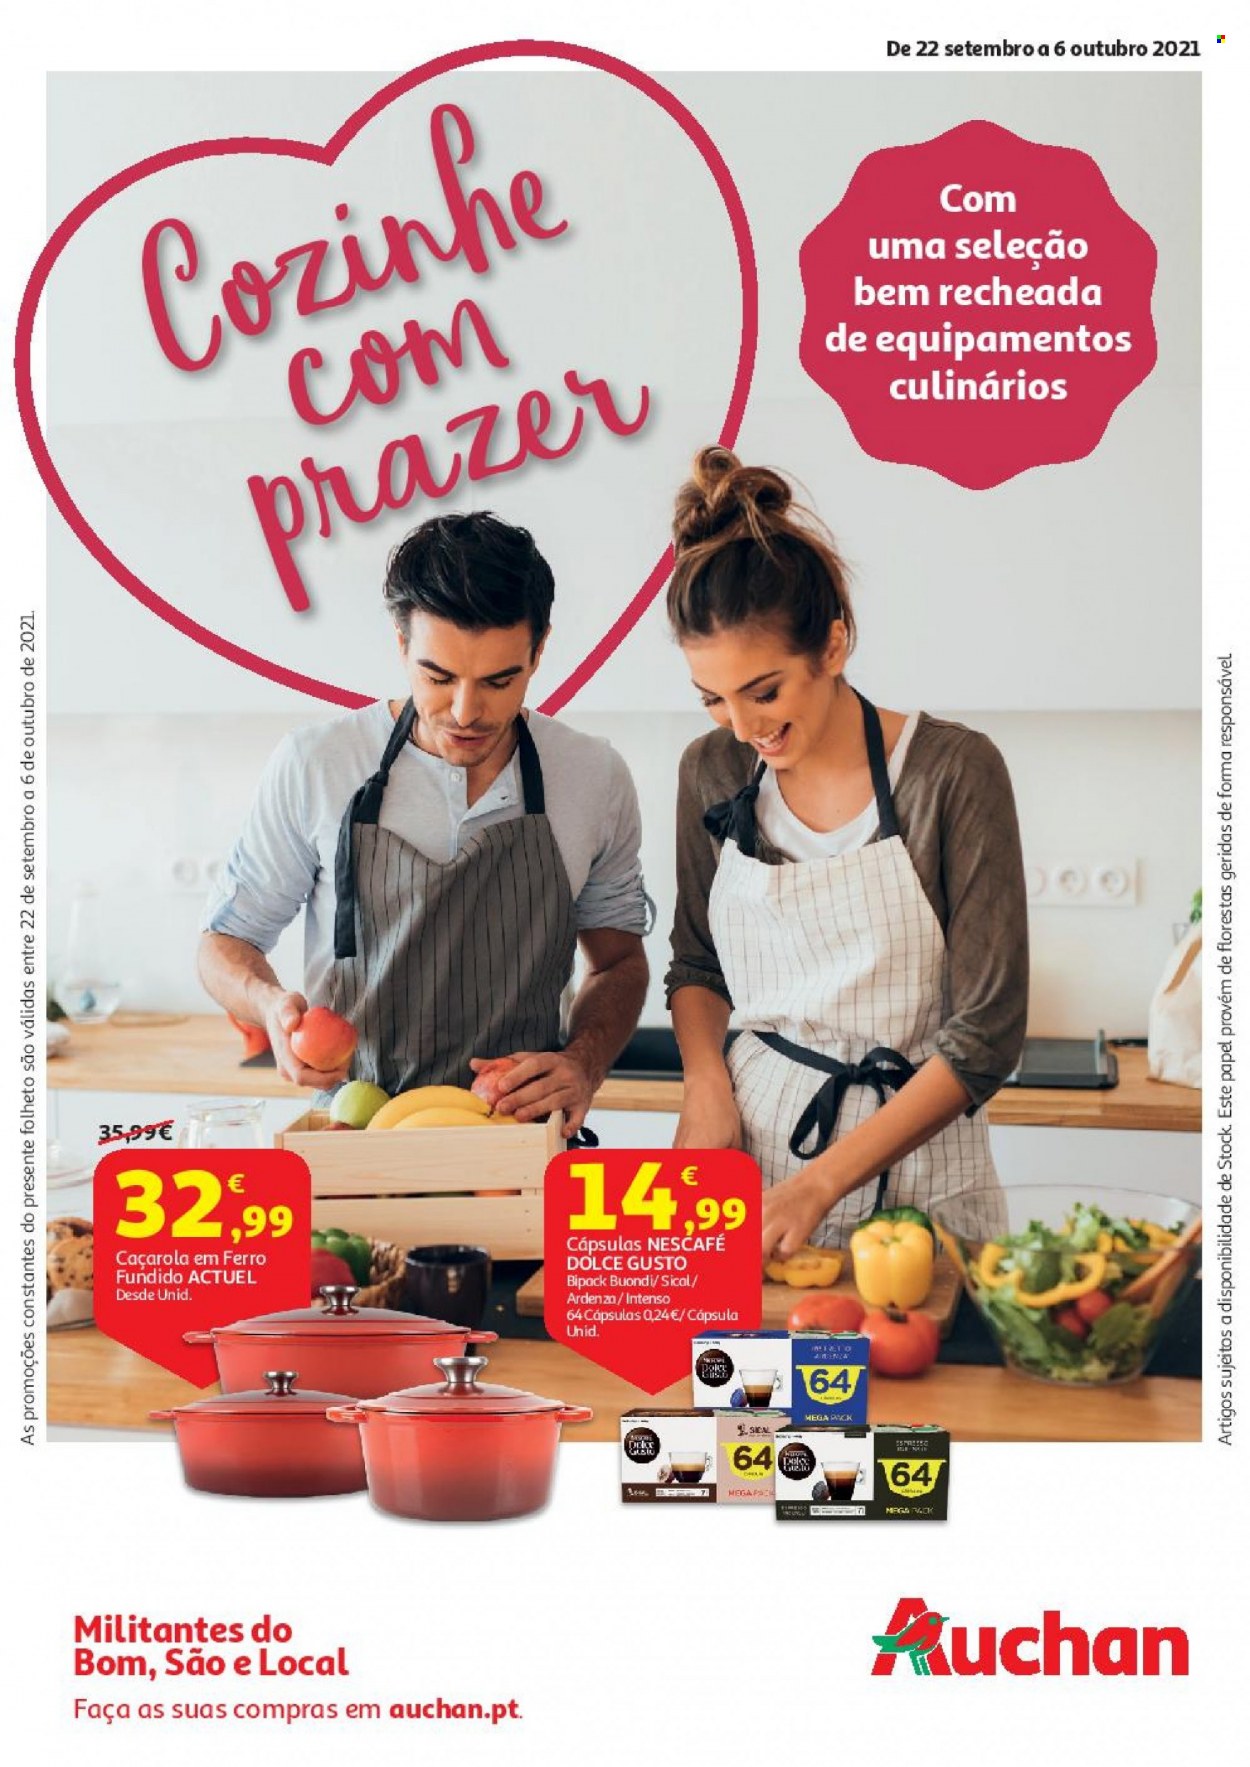 thumbnail - Folheto Auchan - 22.9.2021 - 6.10.2021 - Produtos em promoção - Nescafé, Dolce Gusto, Sical, caçarola. Página 1.